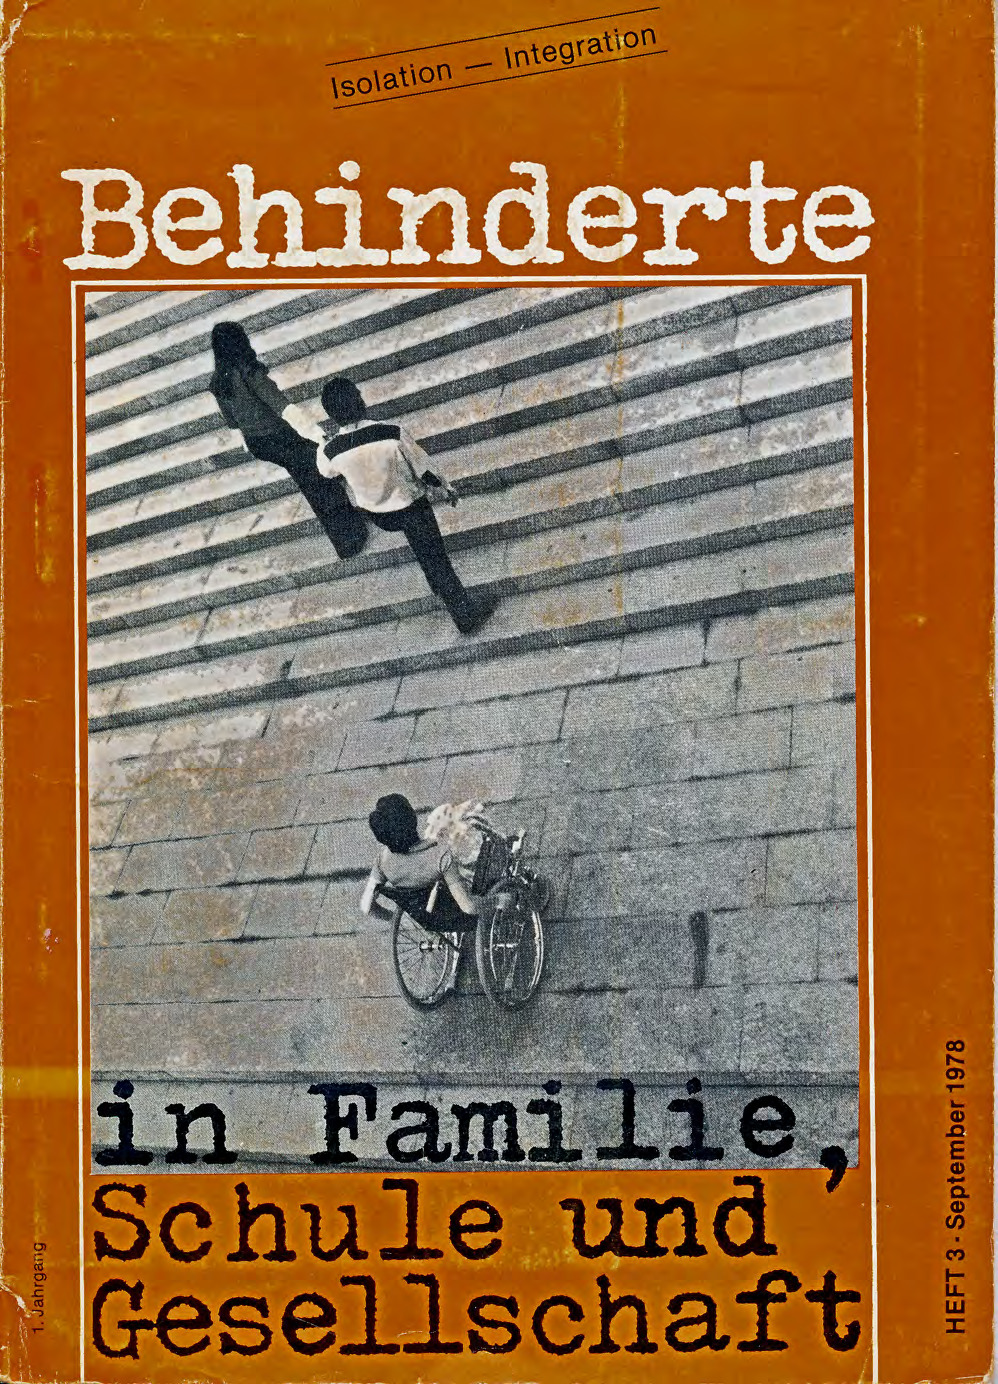 Titelbild der Zeitschrift BEHINDERTE MENSCHEN, Ausgabe 3/1978 "Isolation – Integration"